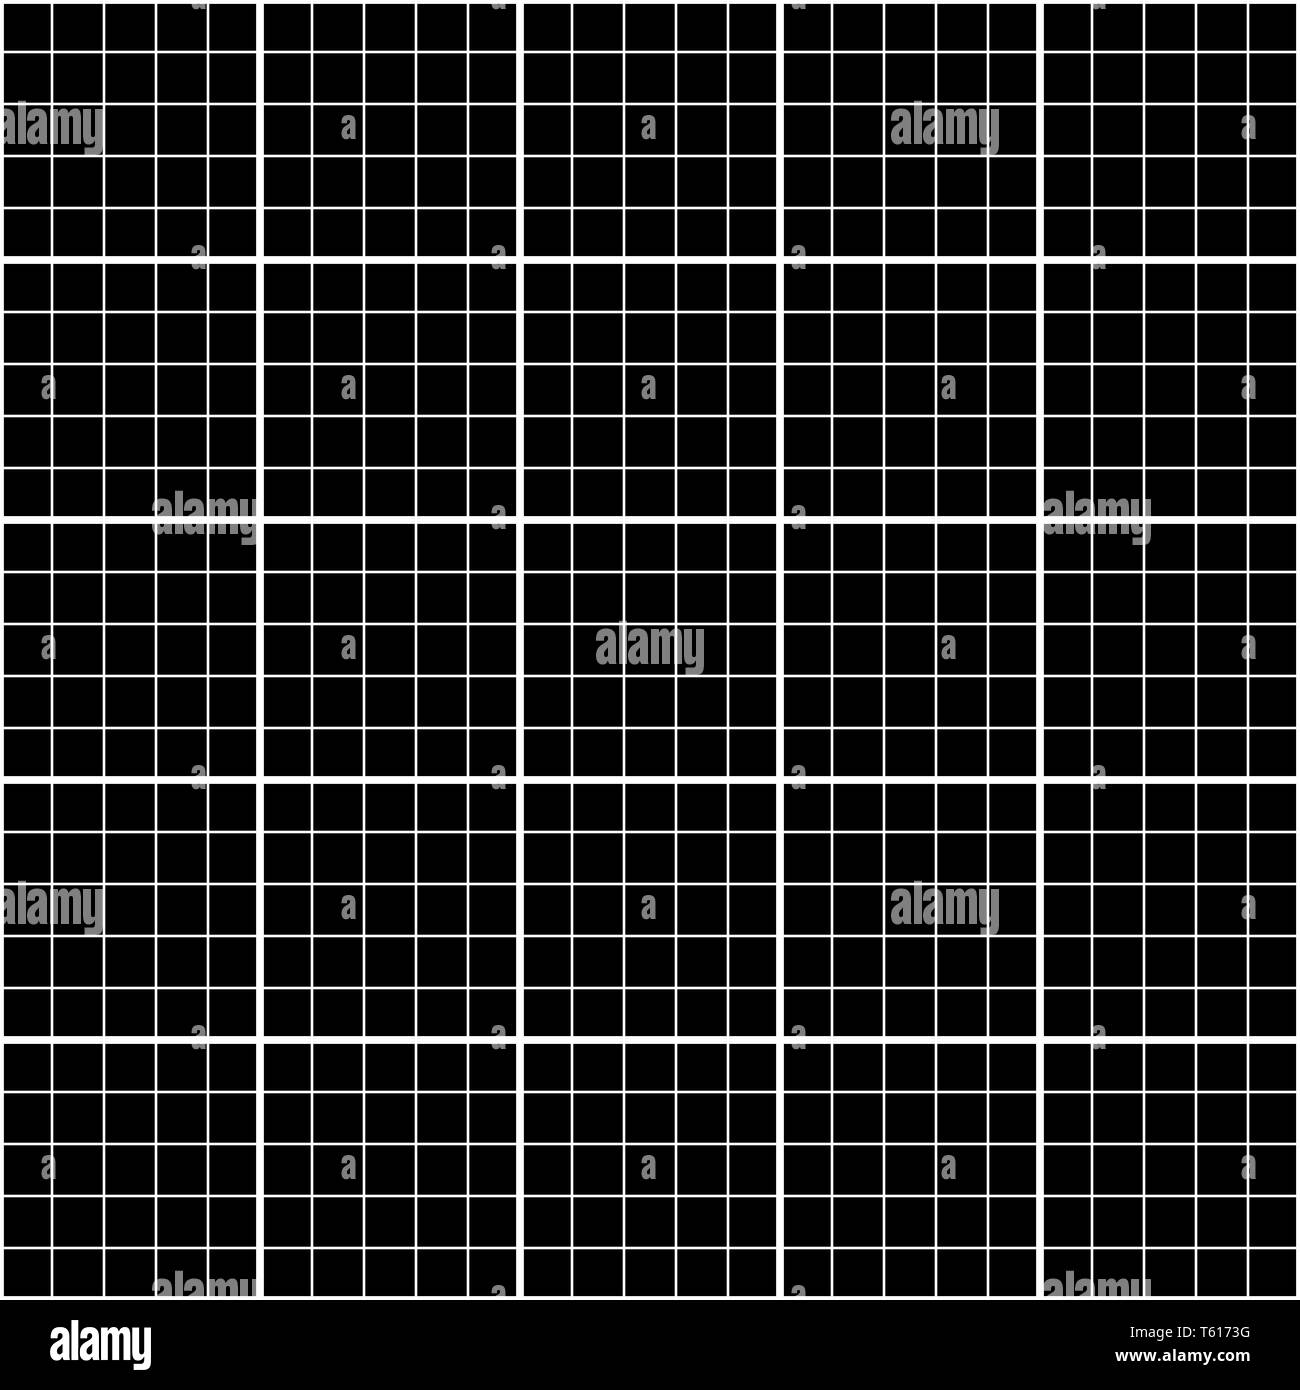 Cinq millimètre carré blanc sur noir, grille graphique motif transparent Illustration de Vecteur